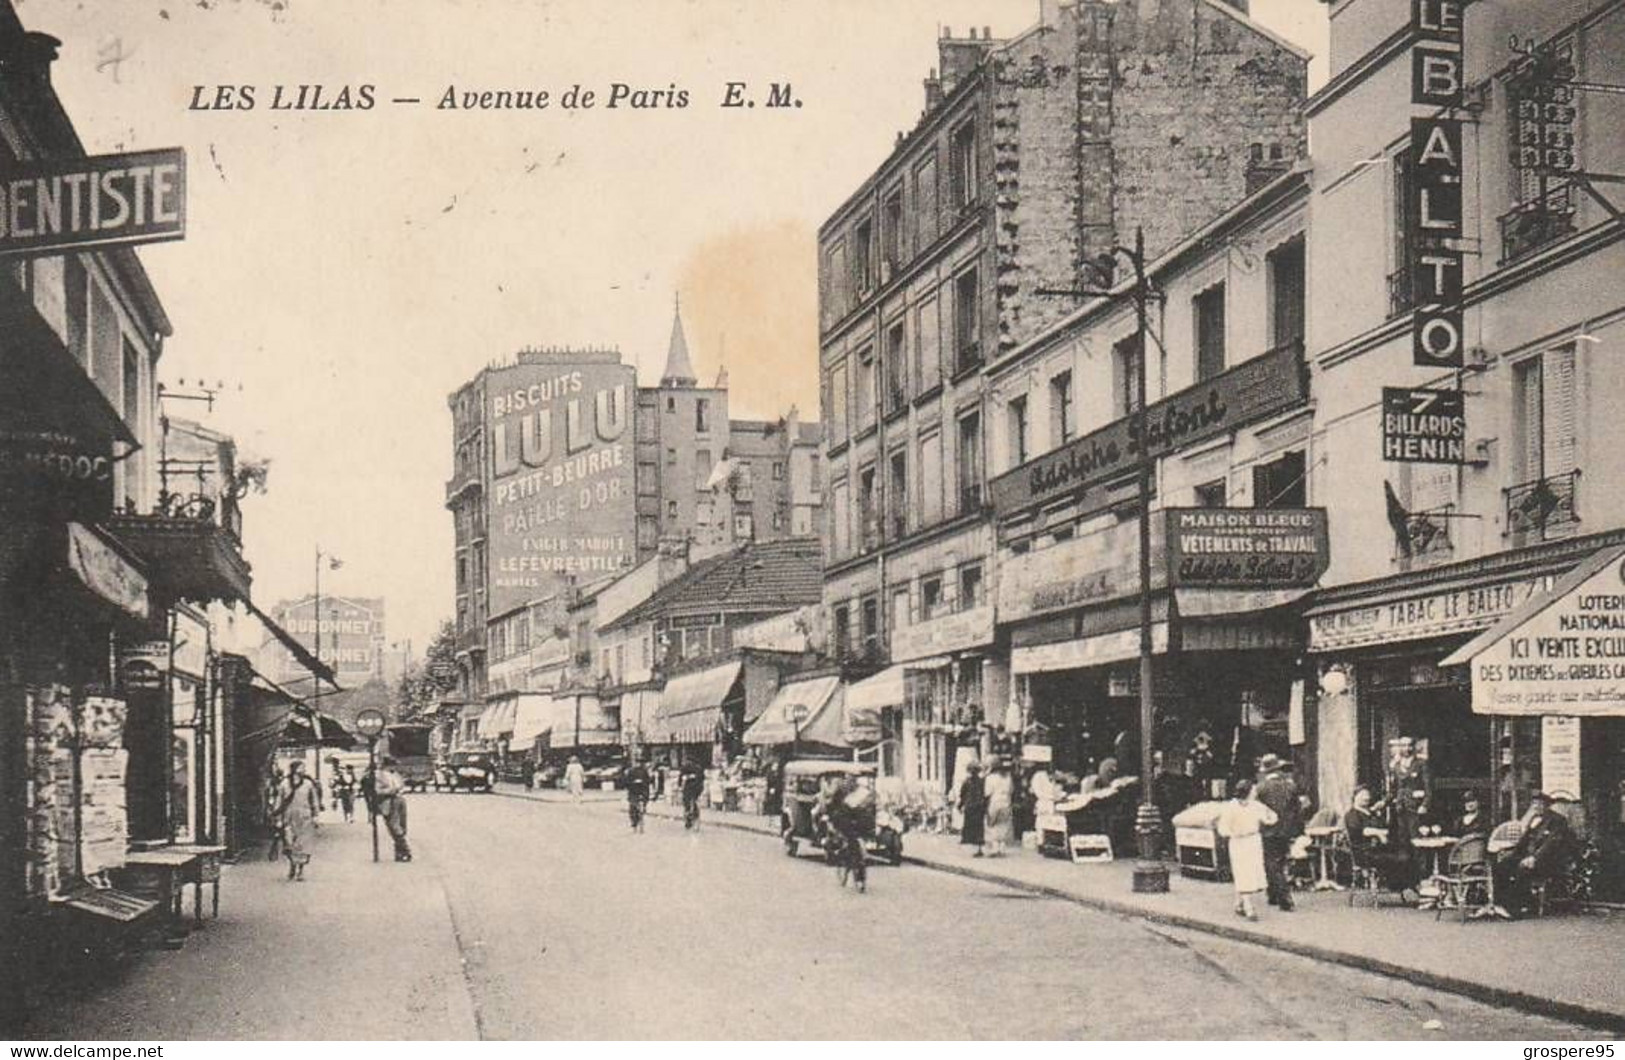 LES LILAS AVENUE DE PARIS 1938 - Les Lilas